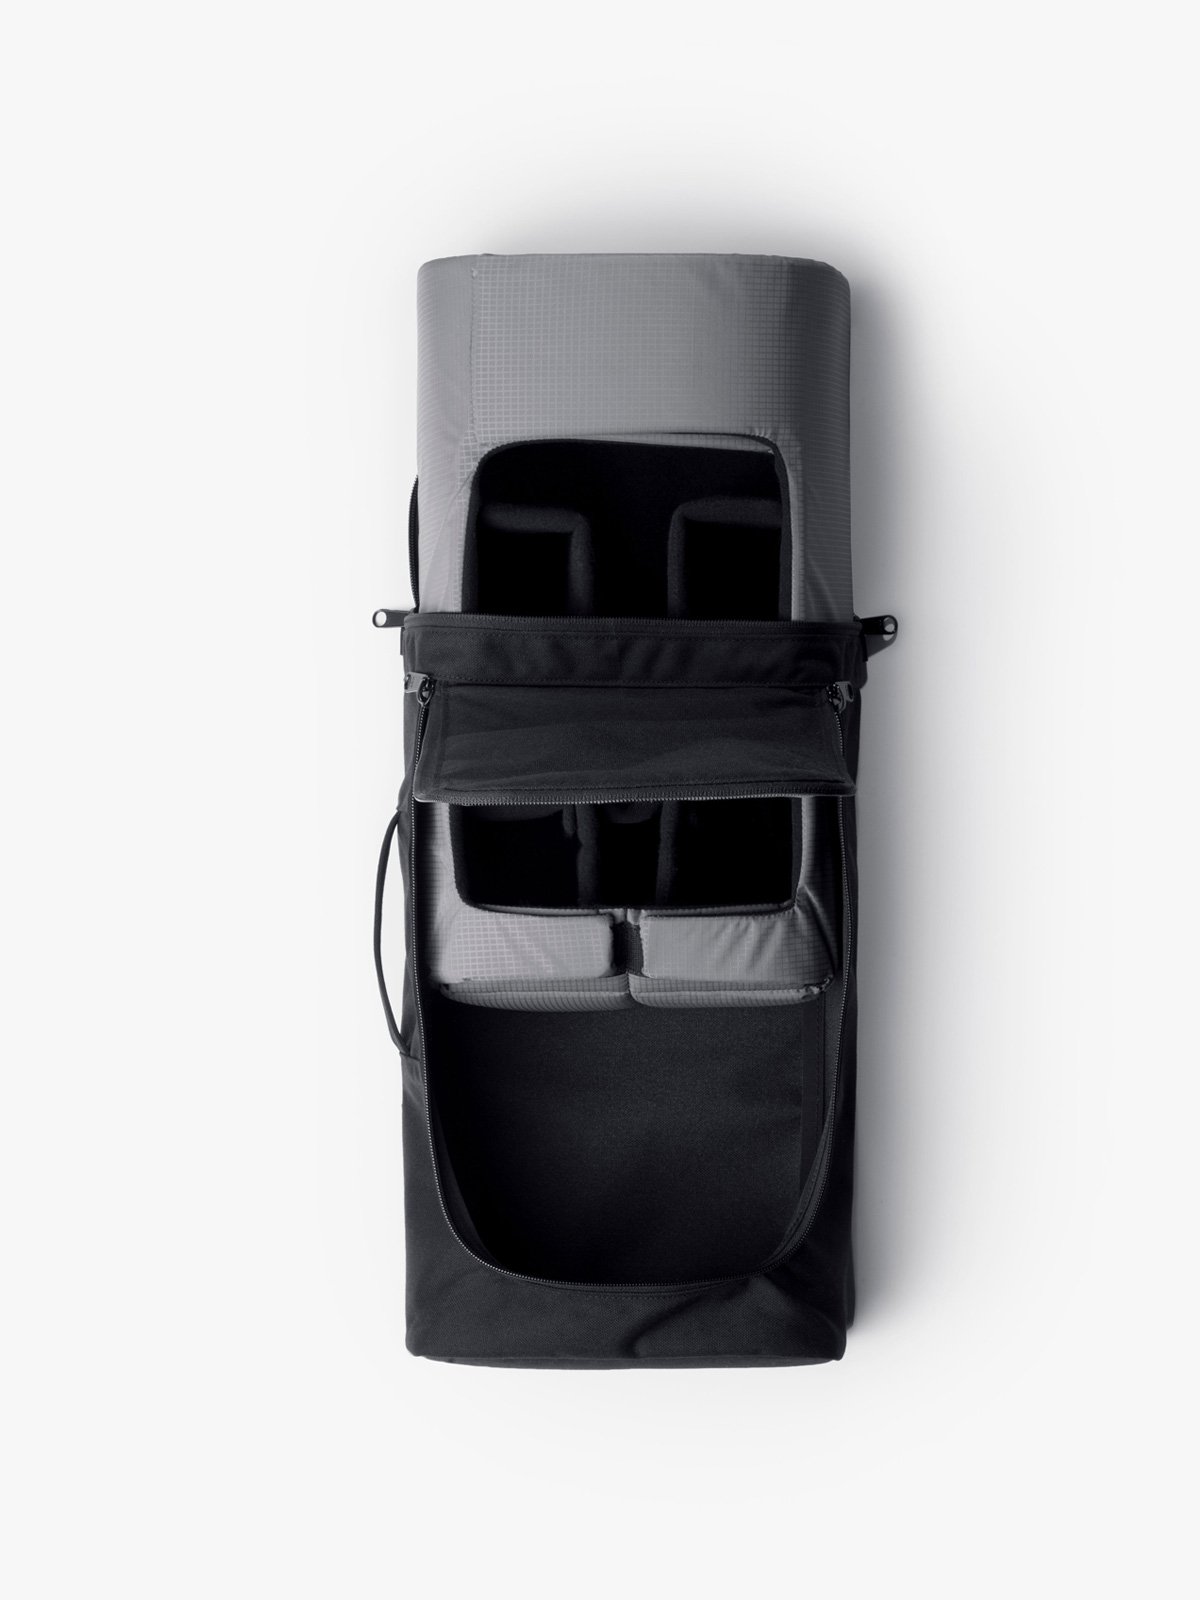 Capsule by Mission Workshop - Weatherproof Bags & Technical Apparel - San Francisco & Los Angeles - Construit pour durer - Garanti pour toujours